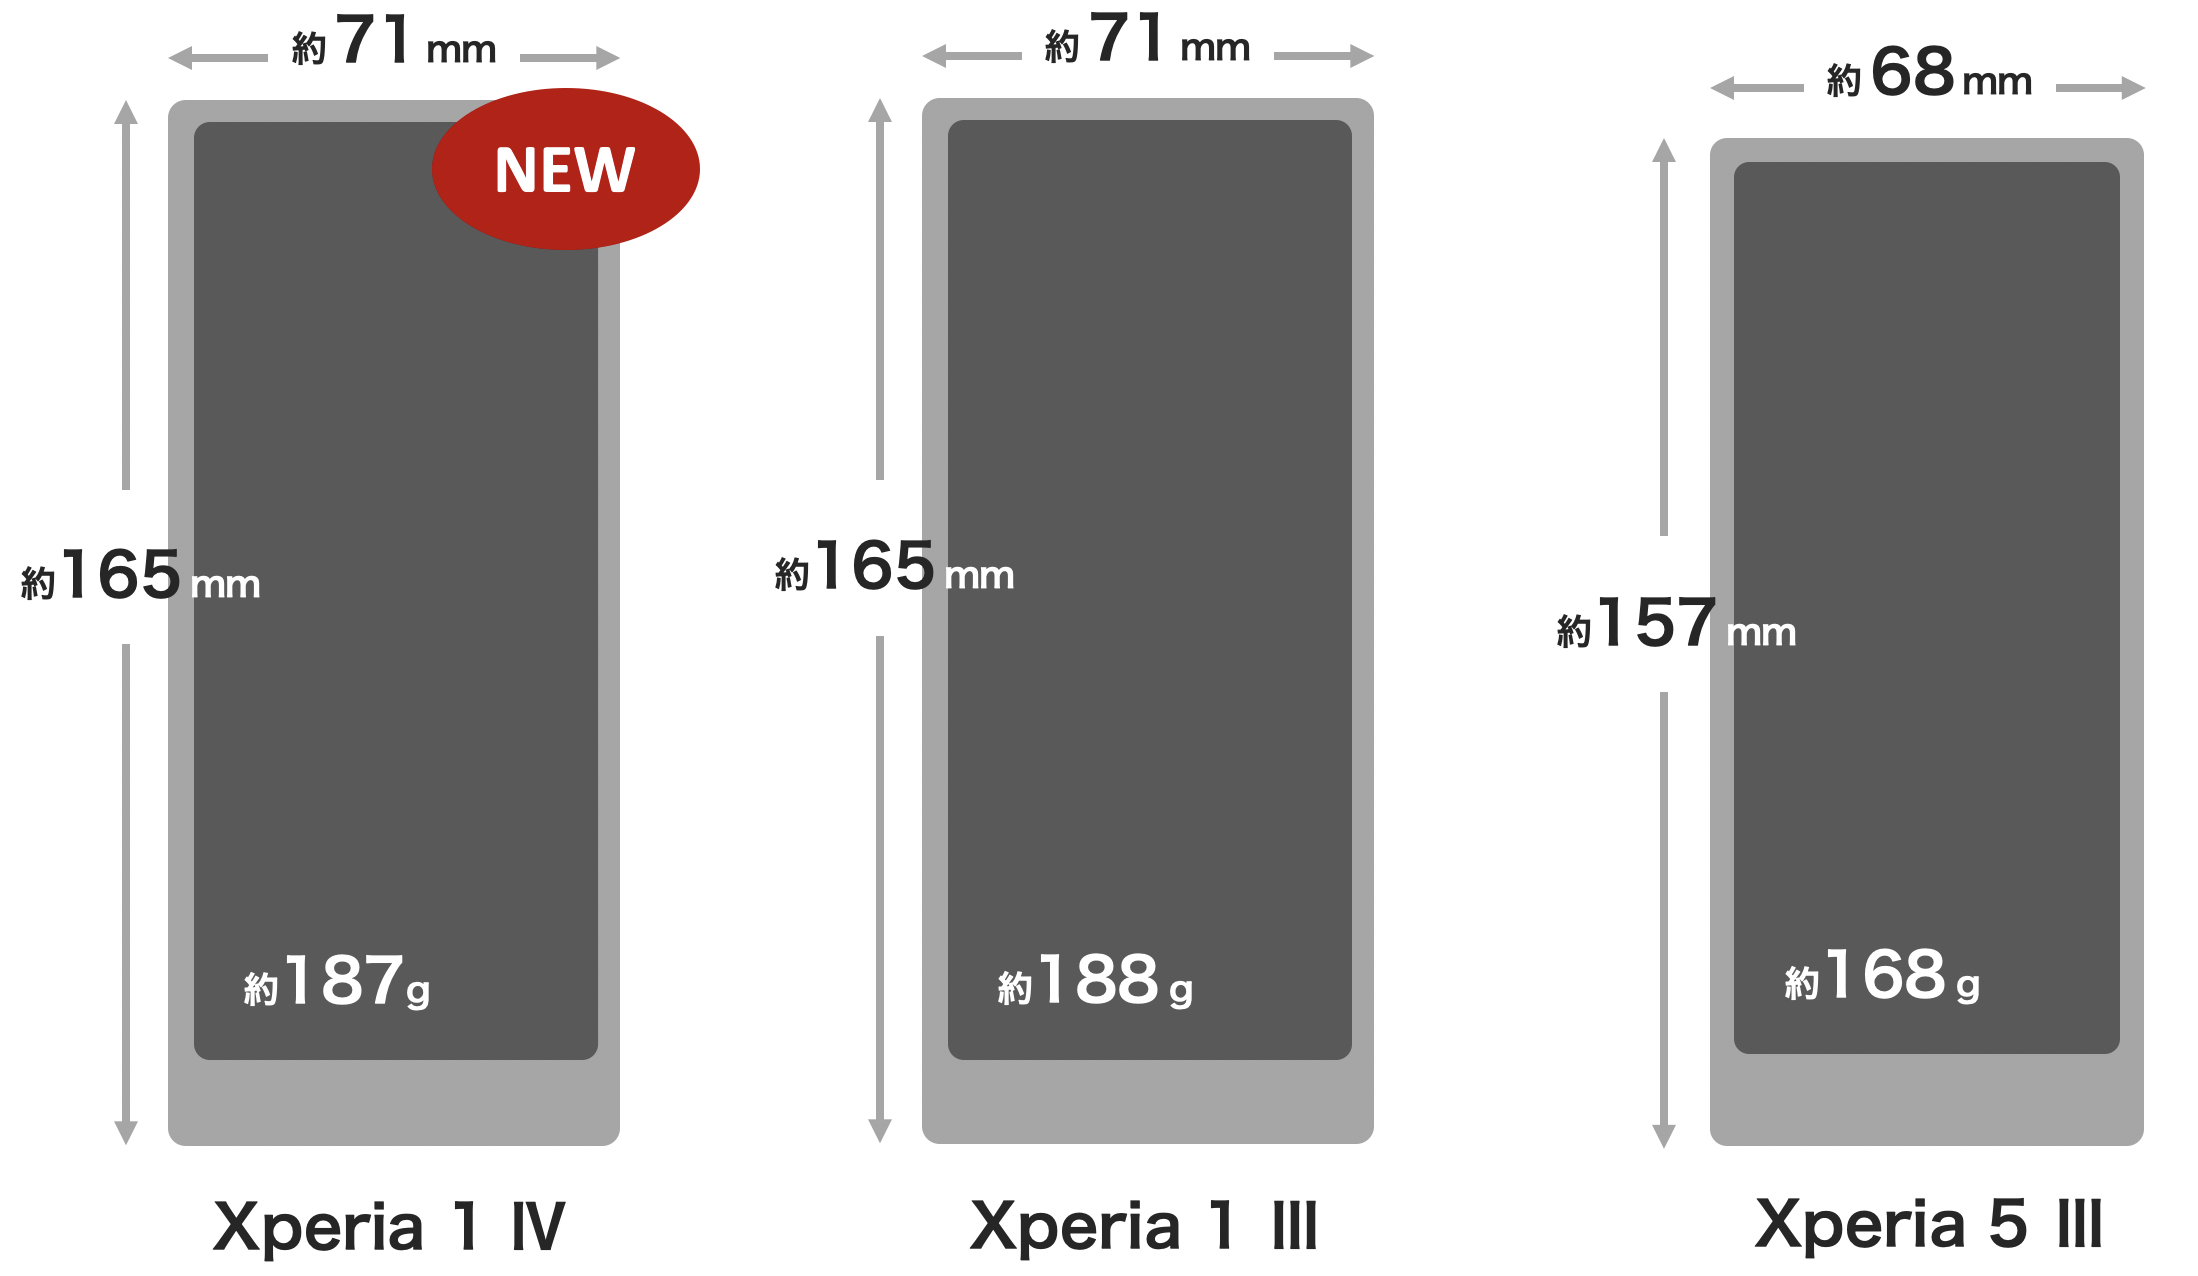 Xperia 1 IV / Xperia 1 III / Xperia 5 III の本体サイズ比較